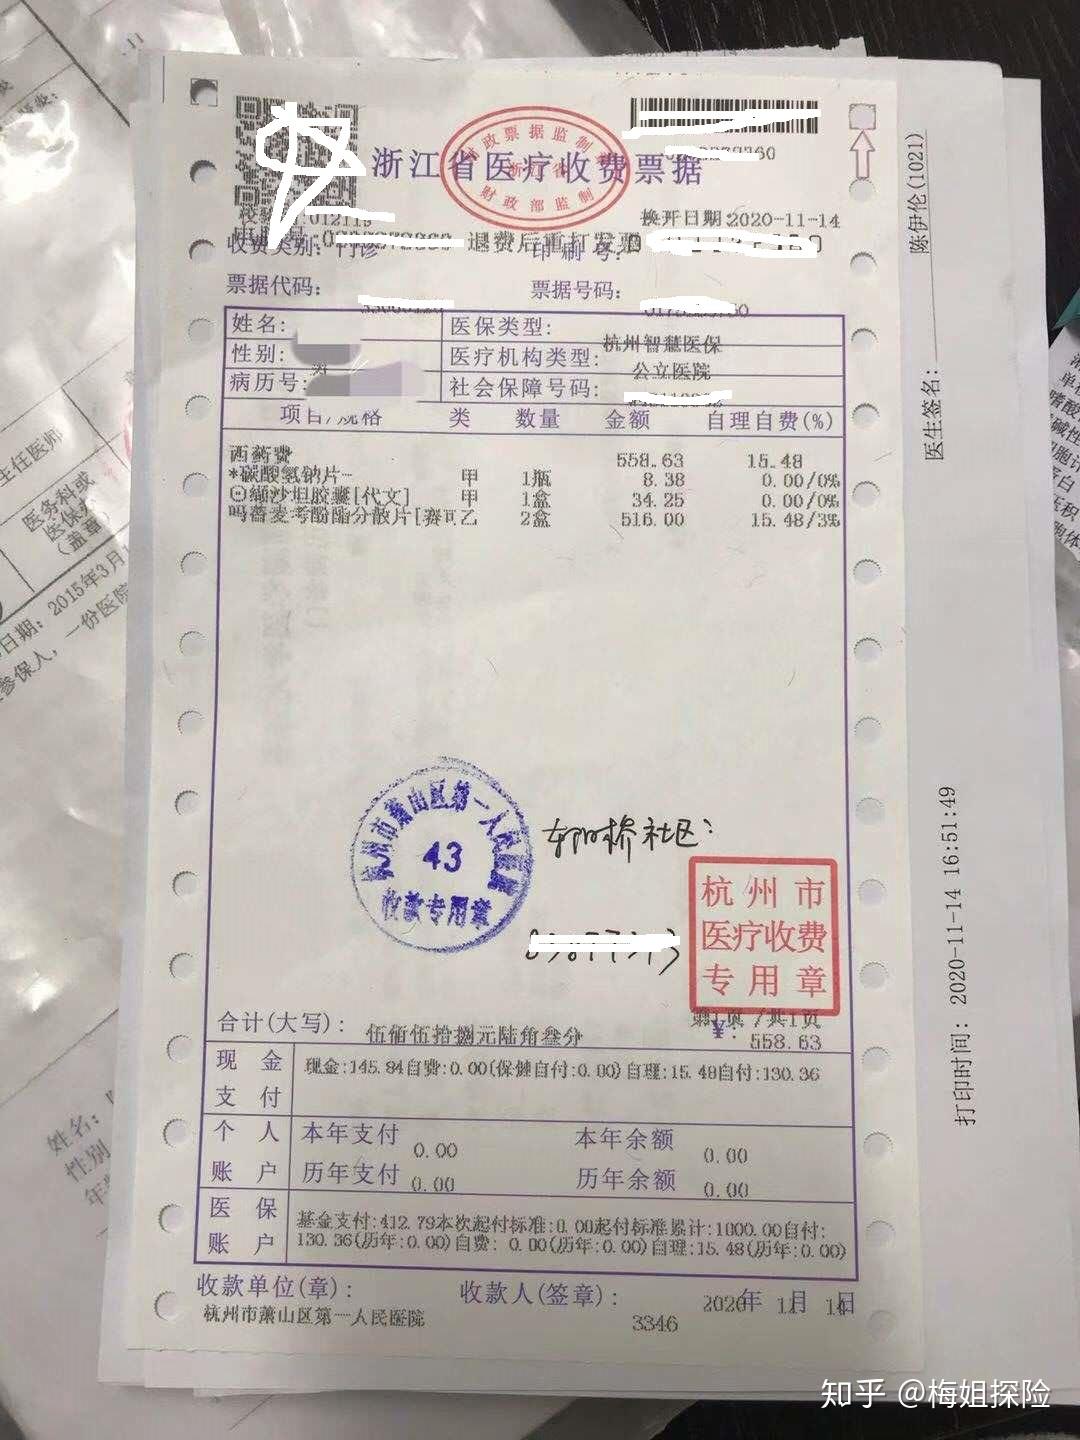 这是一张浙江医院的发票,涉及到甲类和乙类药,从最右边我们可以看出